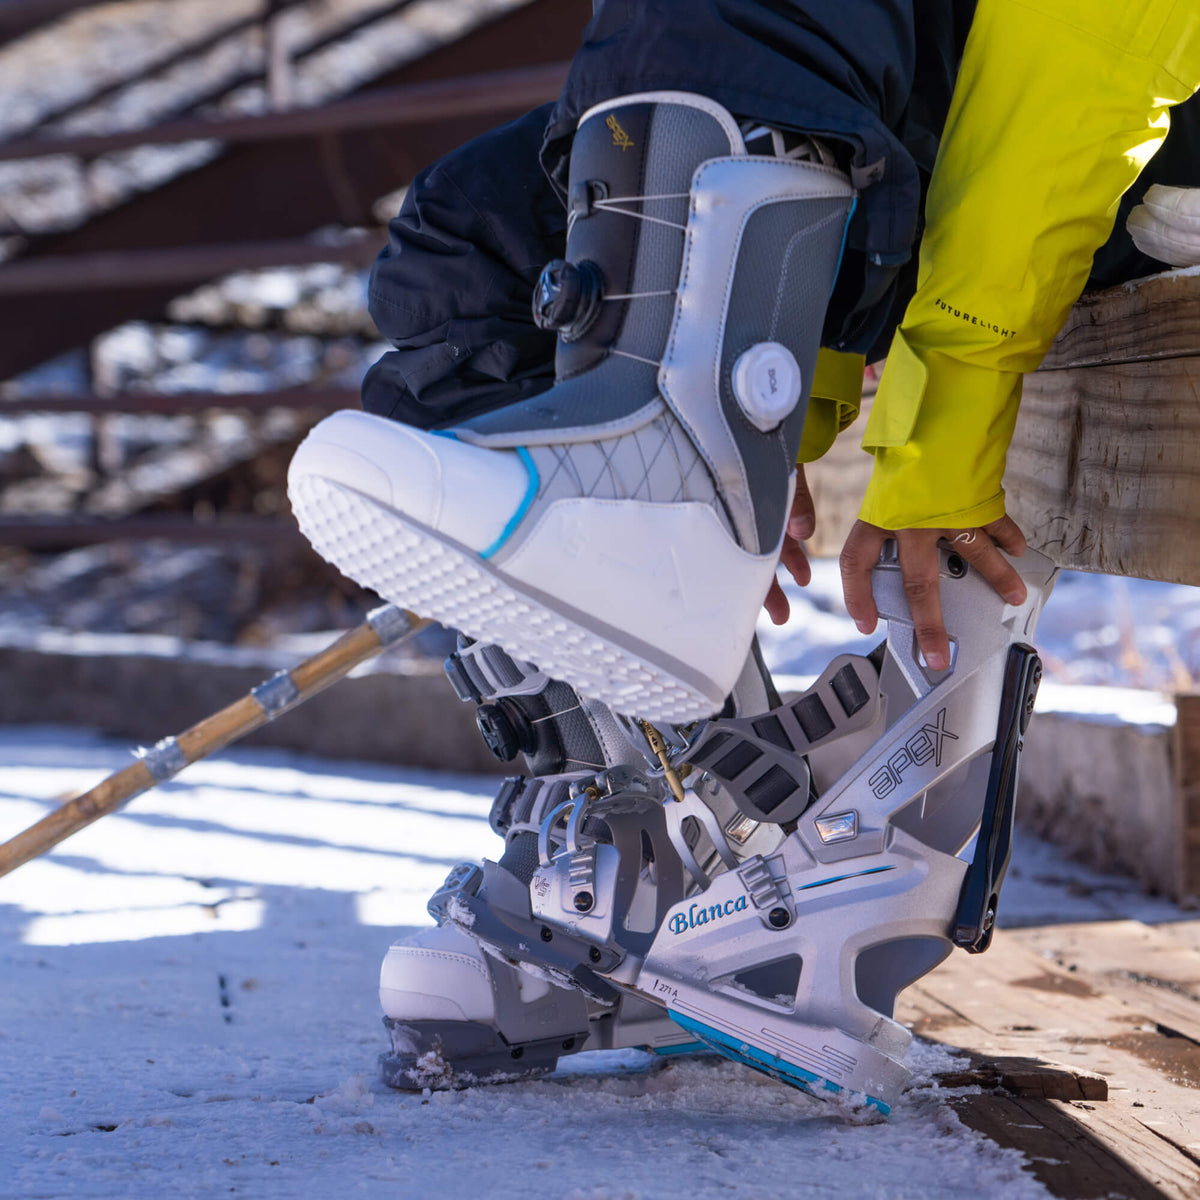 Shop Apex Ski Boots – APEX SKI BOOTS